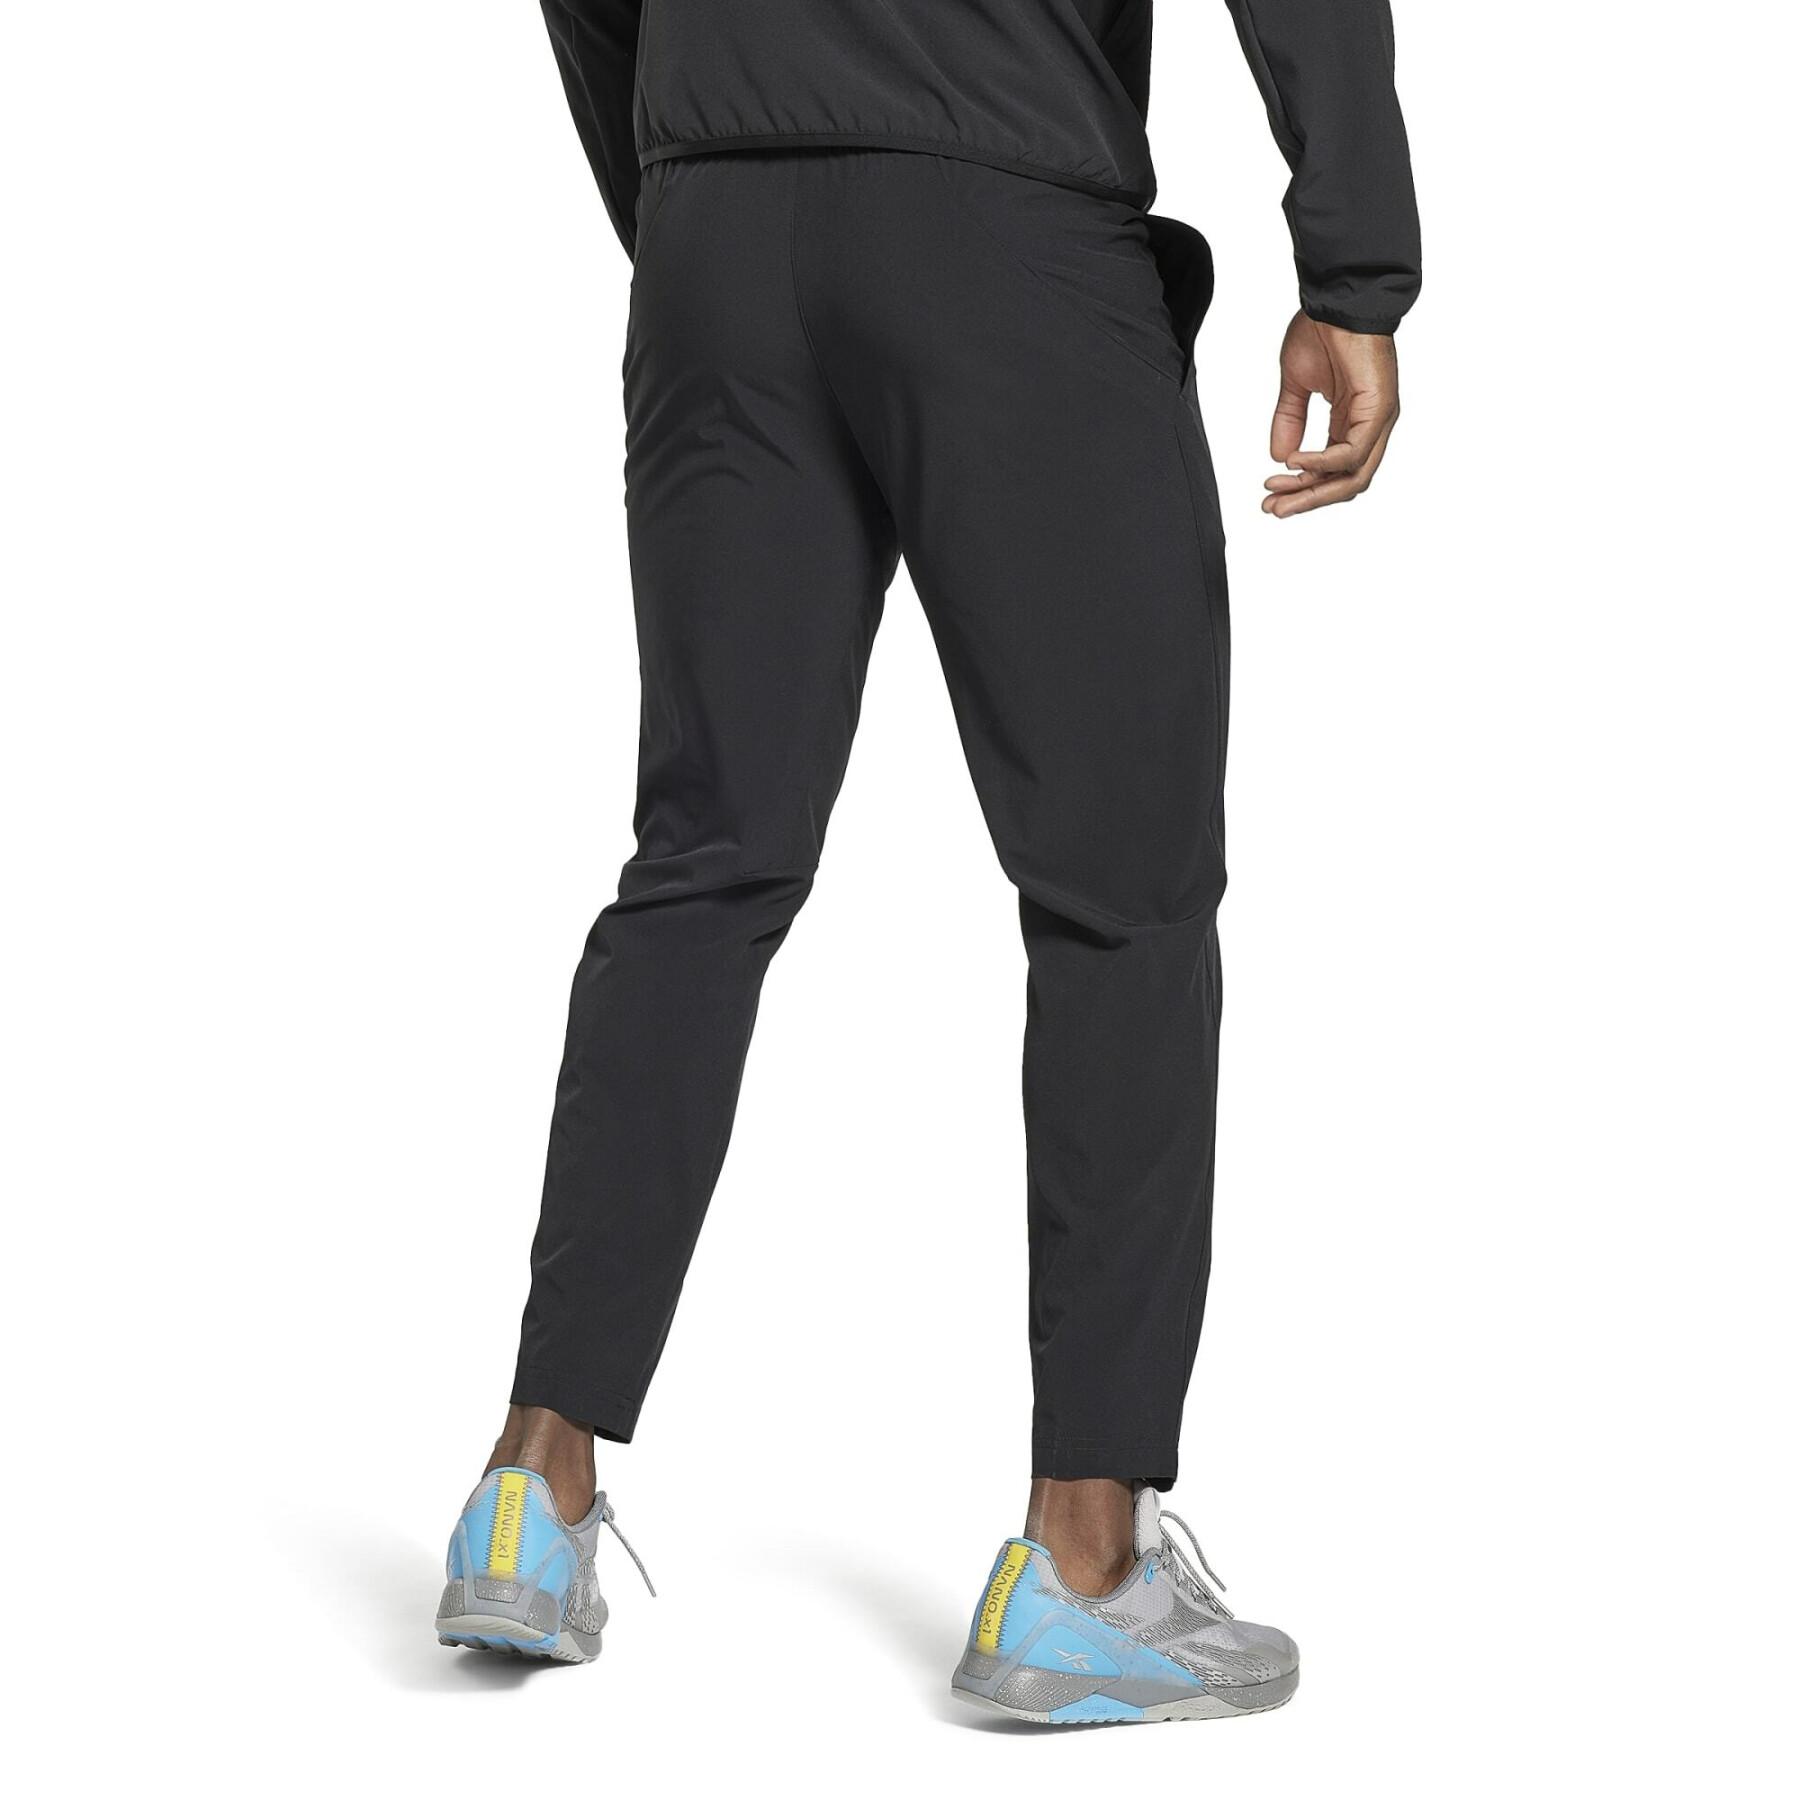 Woven jogging suit Reebok DMX Woven